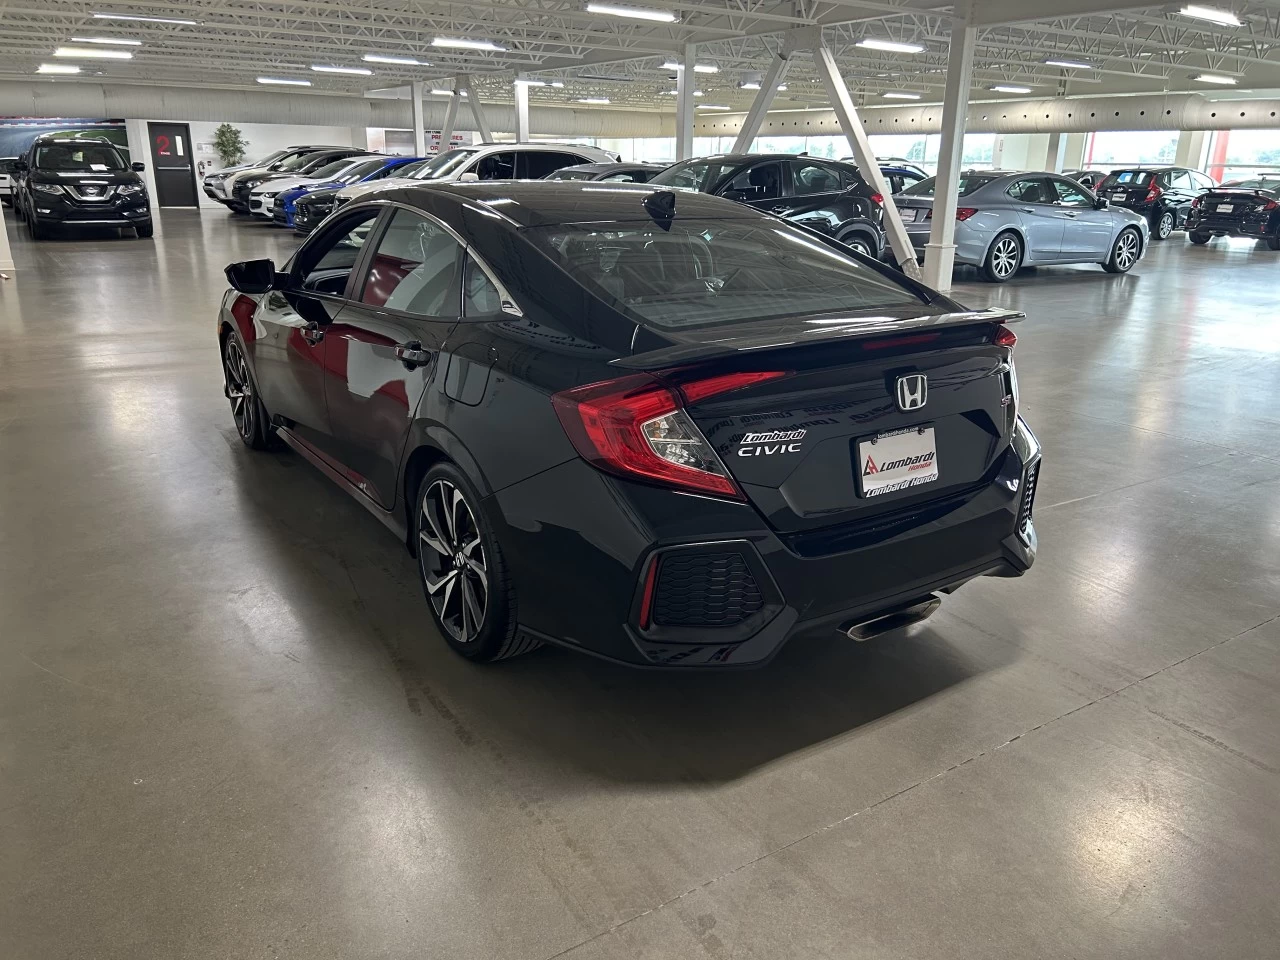 2019 Honda Civic
                                                    SI Image principale